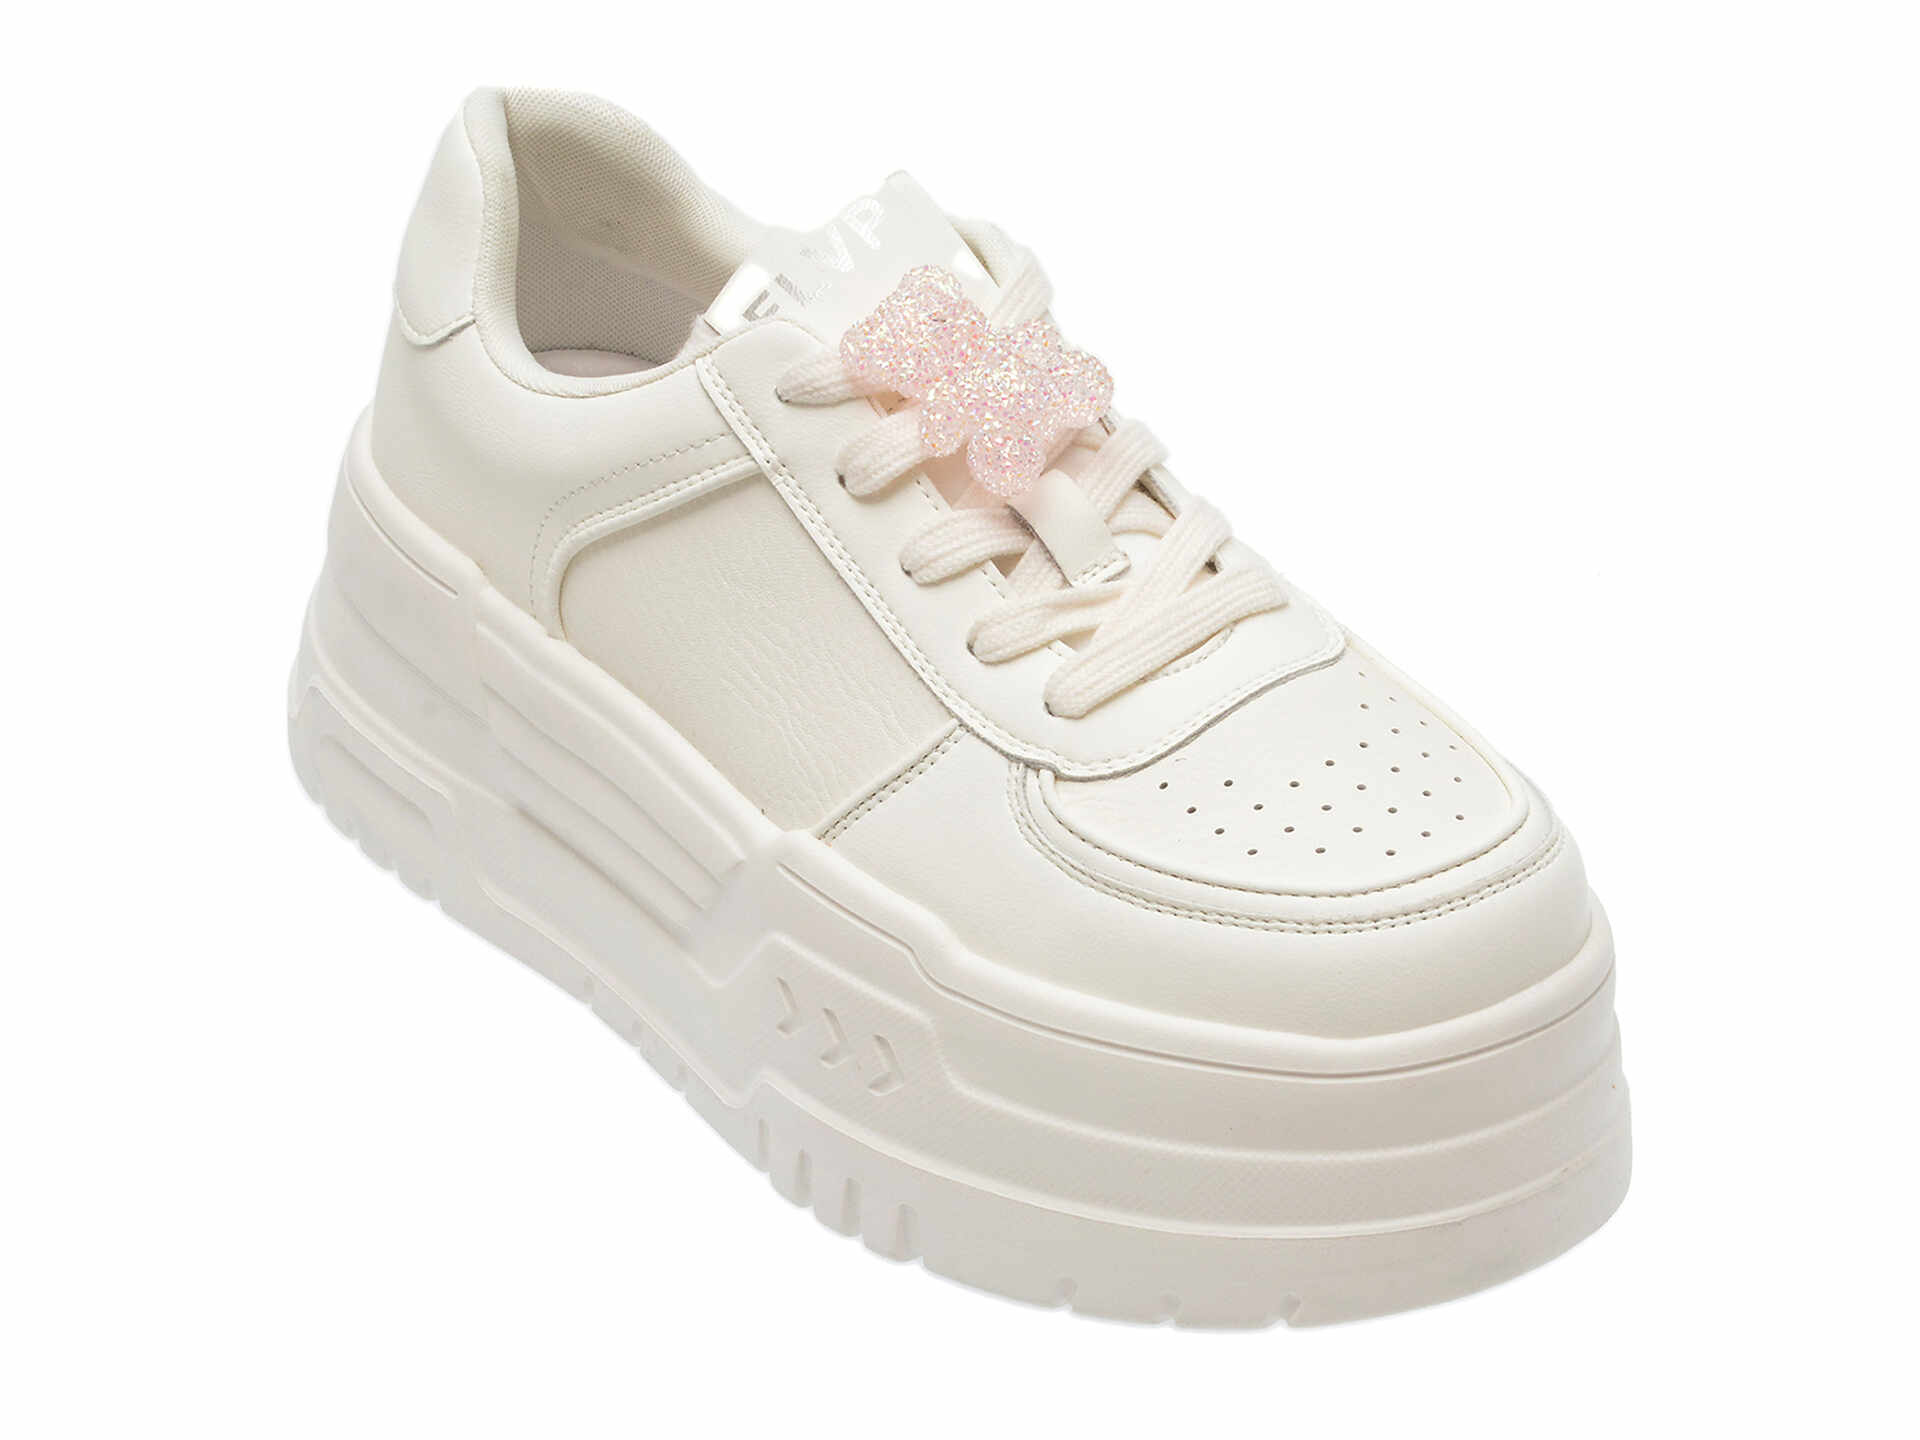 Pantofi casual FLAVIA PASSINI albi, A191, din piele naturala